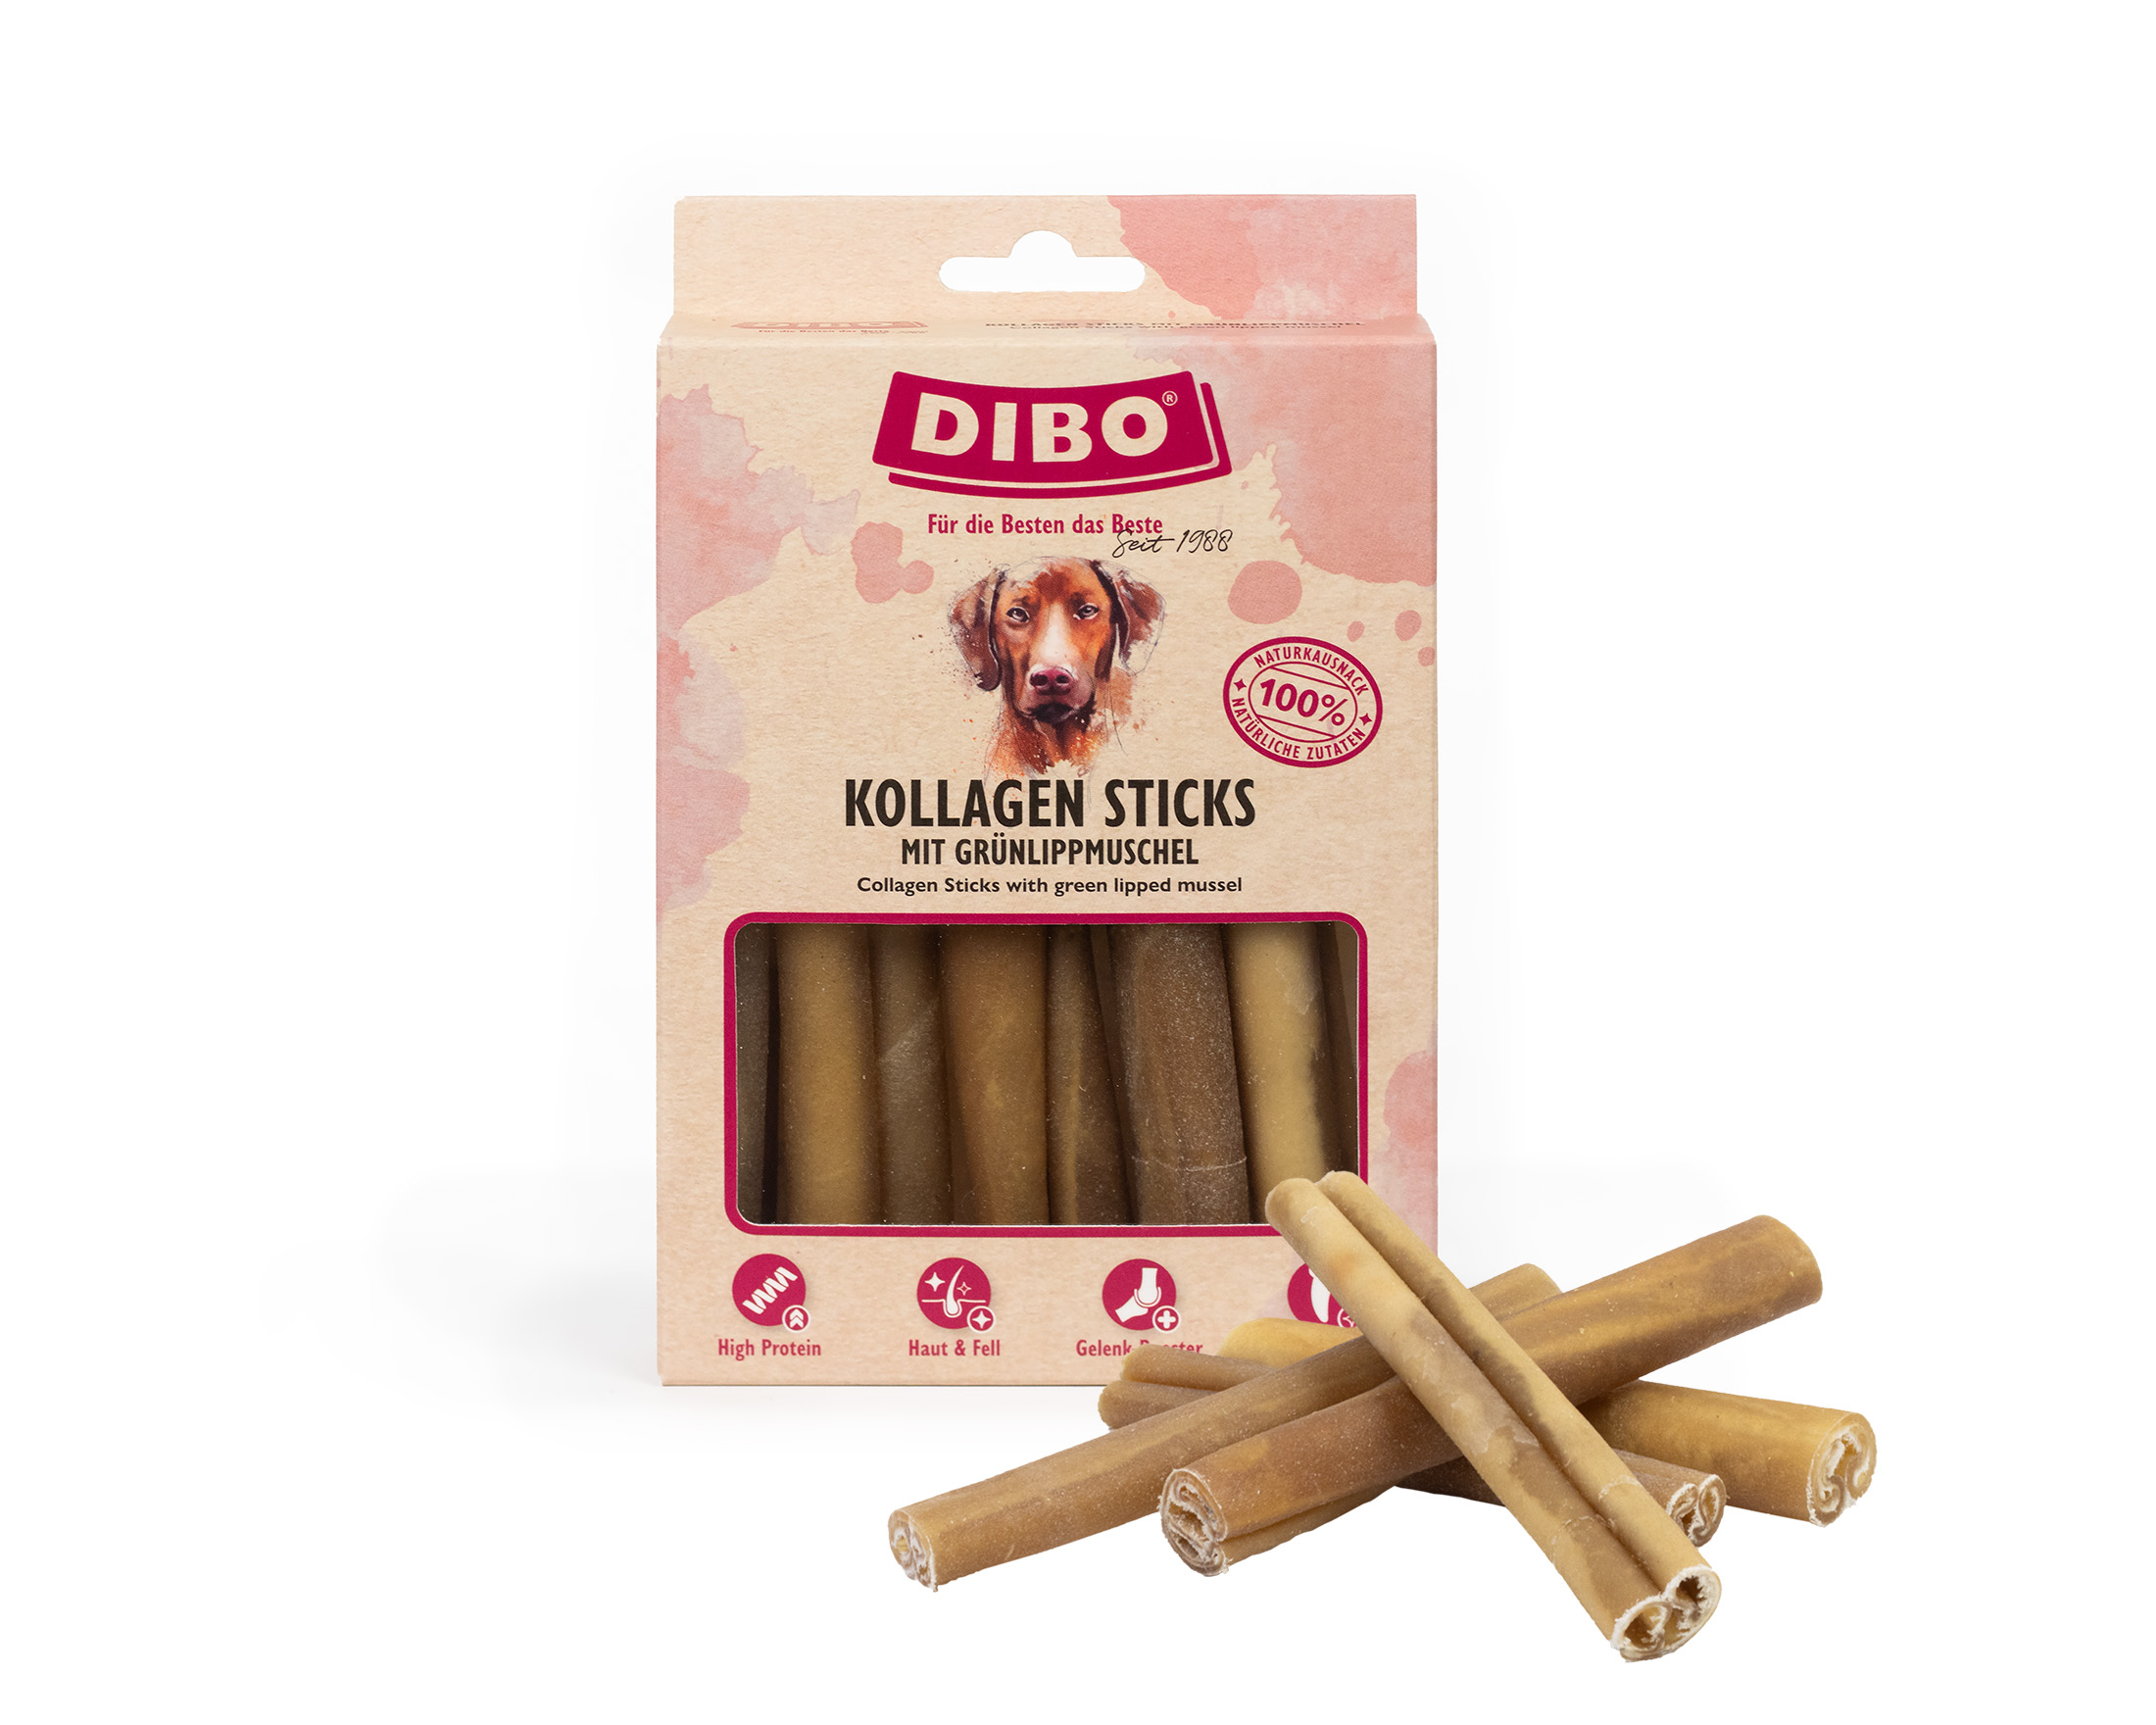 DIBO Kollagen Sticks, 150g